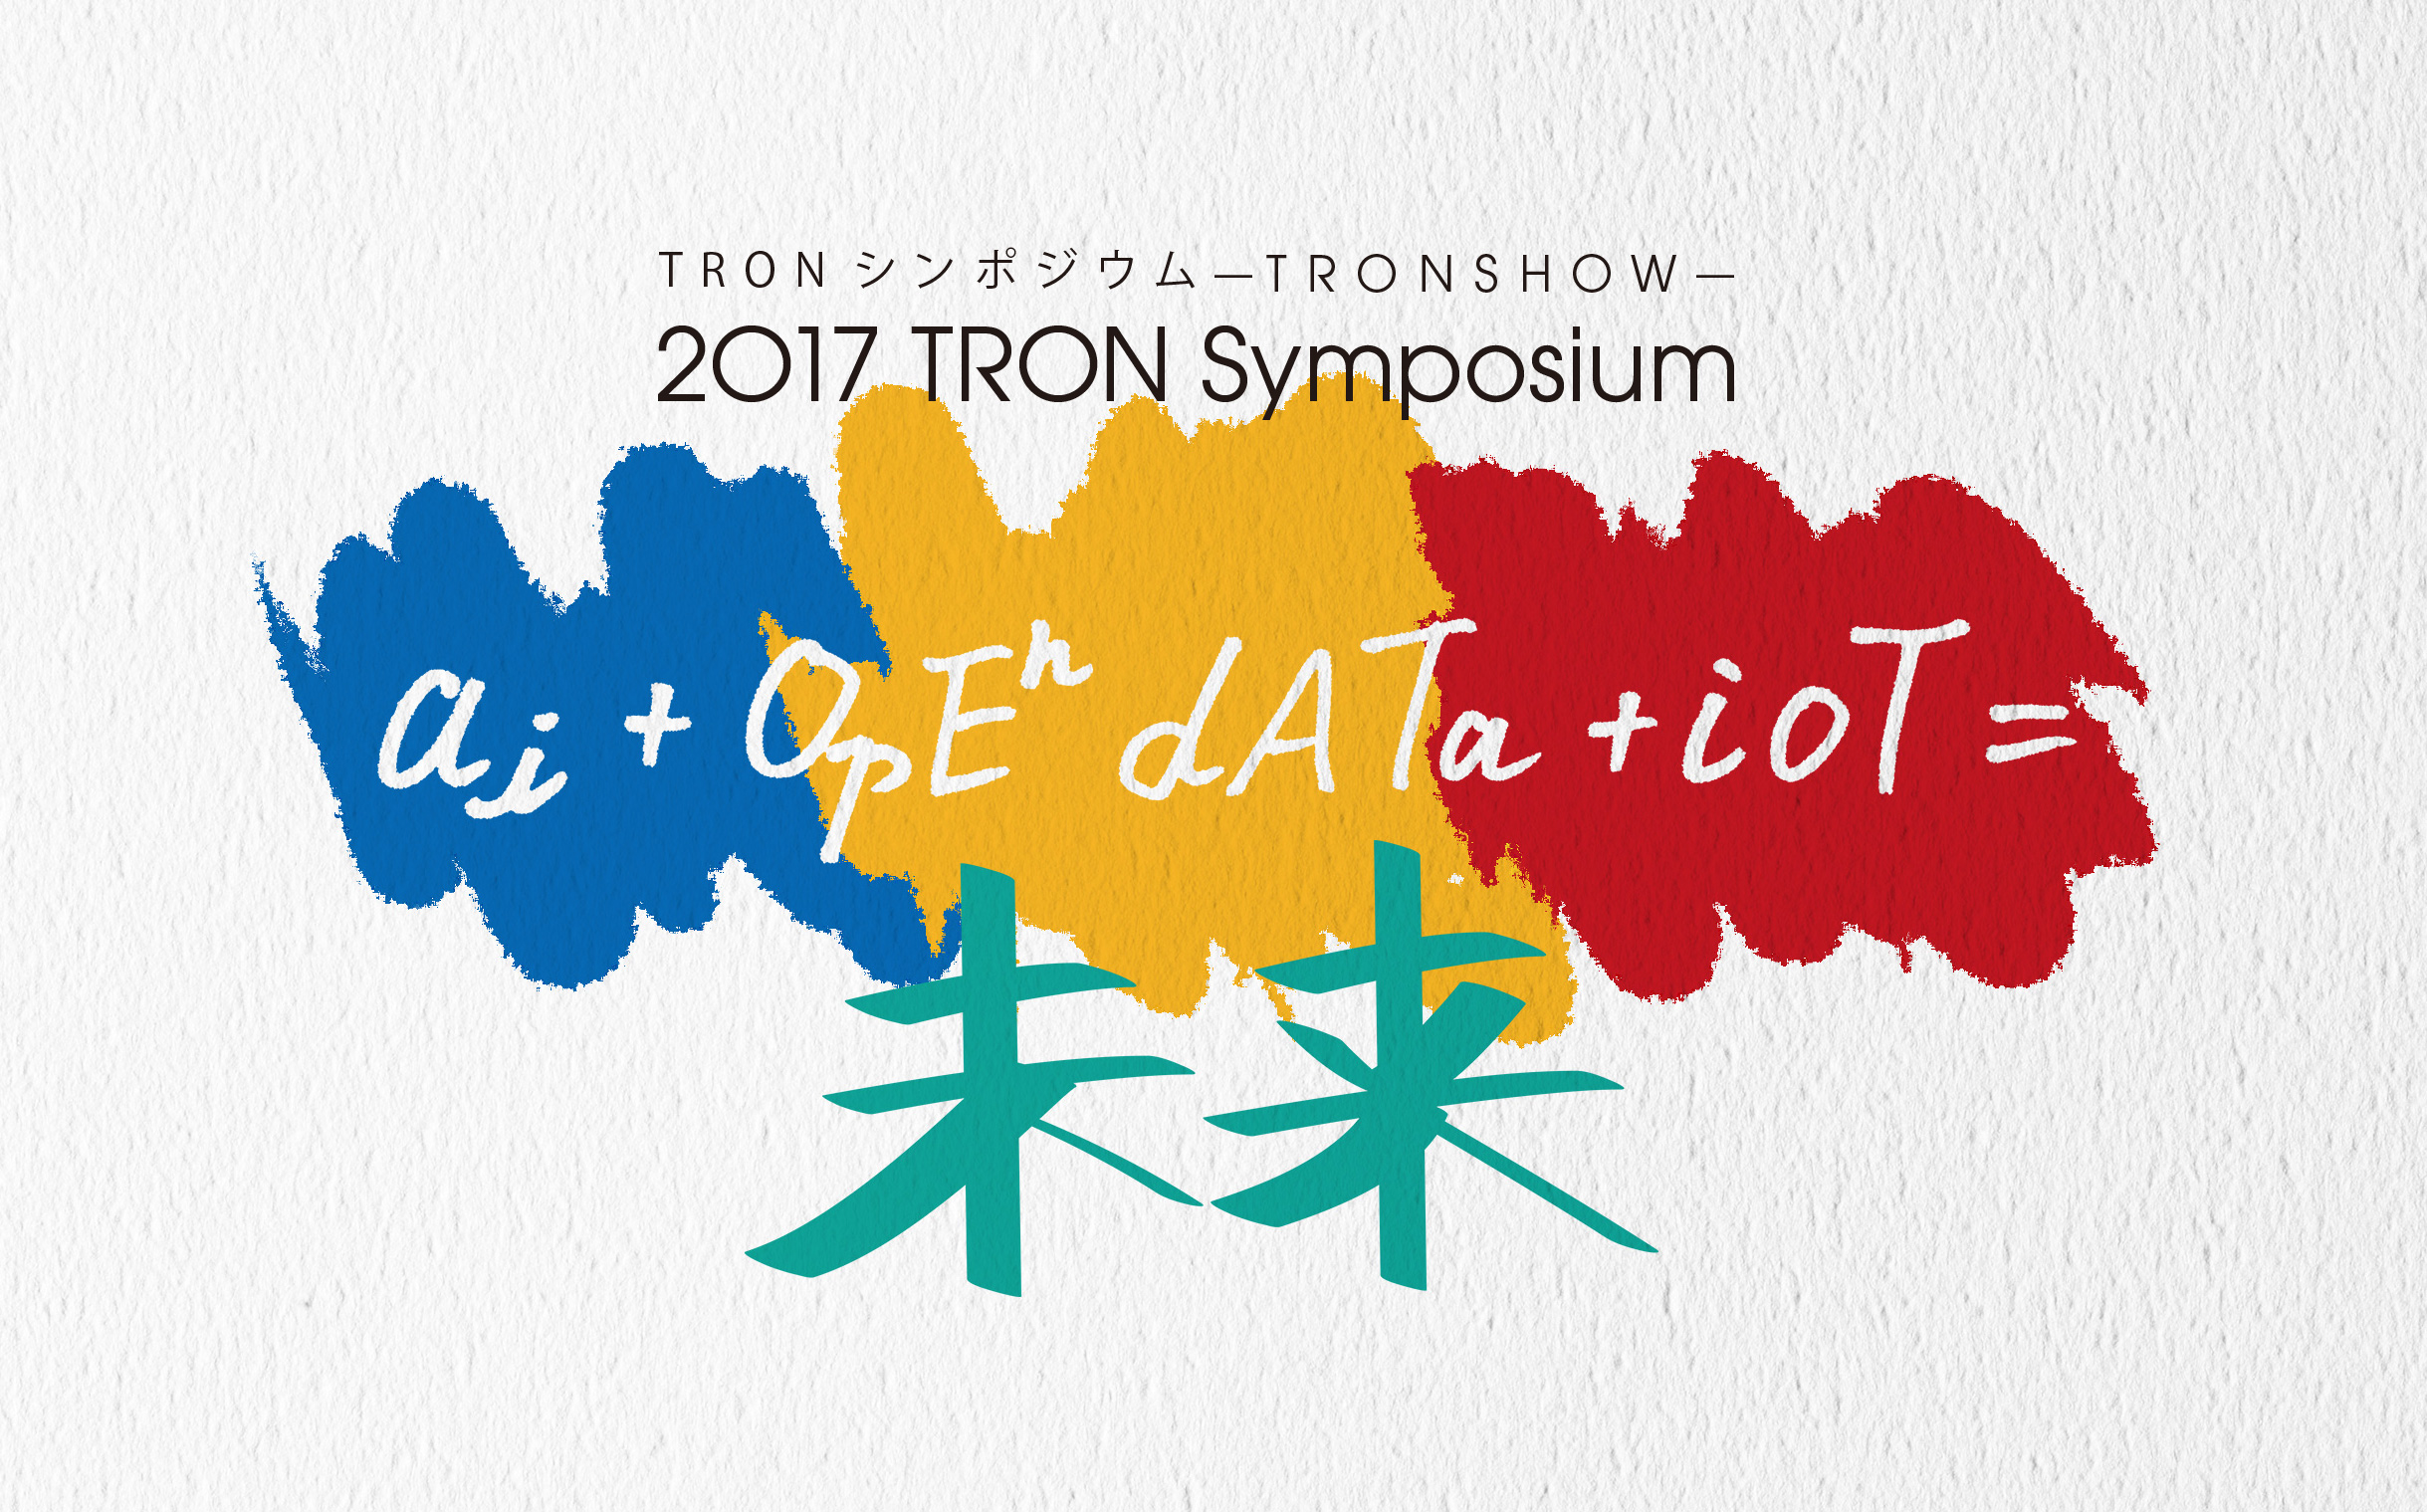 TRONプロジェクトシンポジウム「2017 TRON Symposium -TRONSHOW- AI+オープンデータ+IoT=未来」に多数ご来場賜りありがとうございました